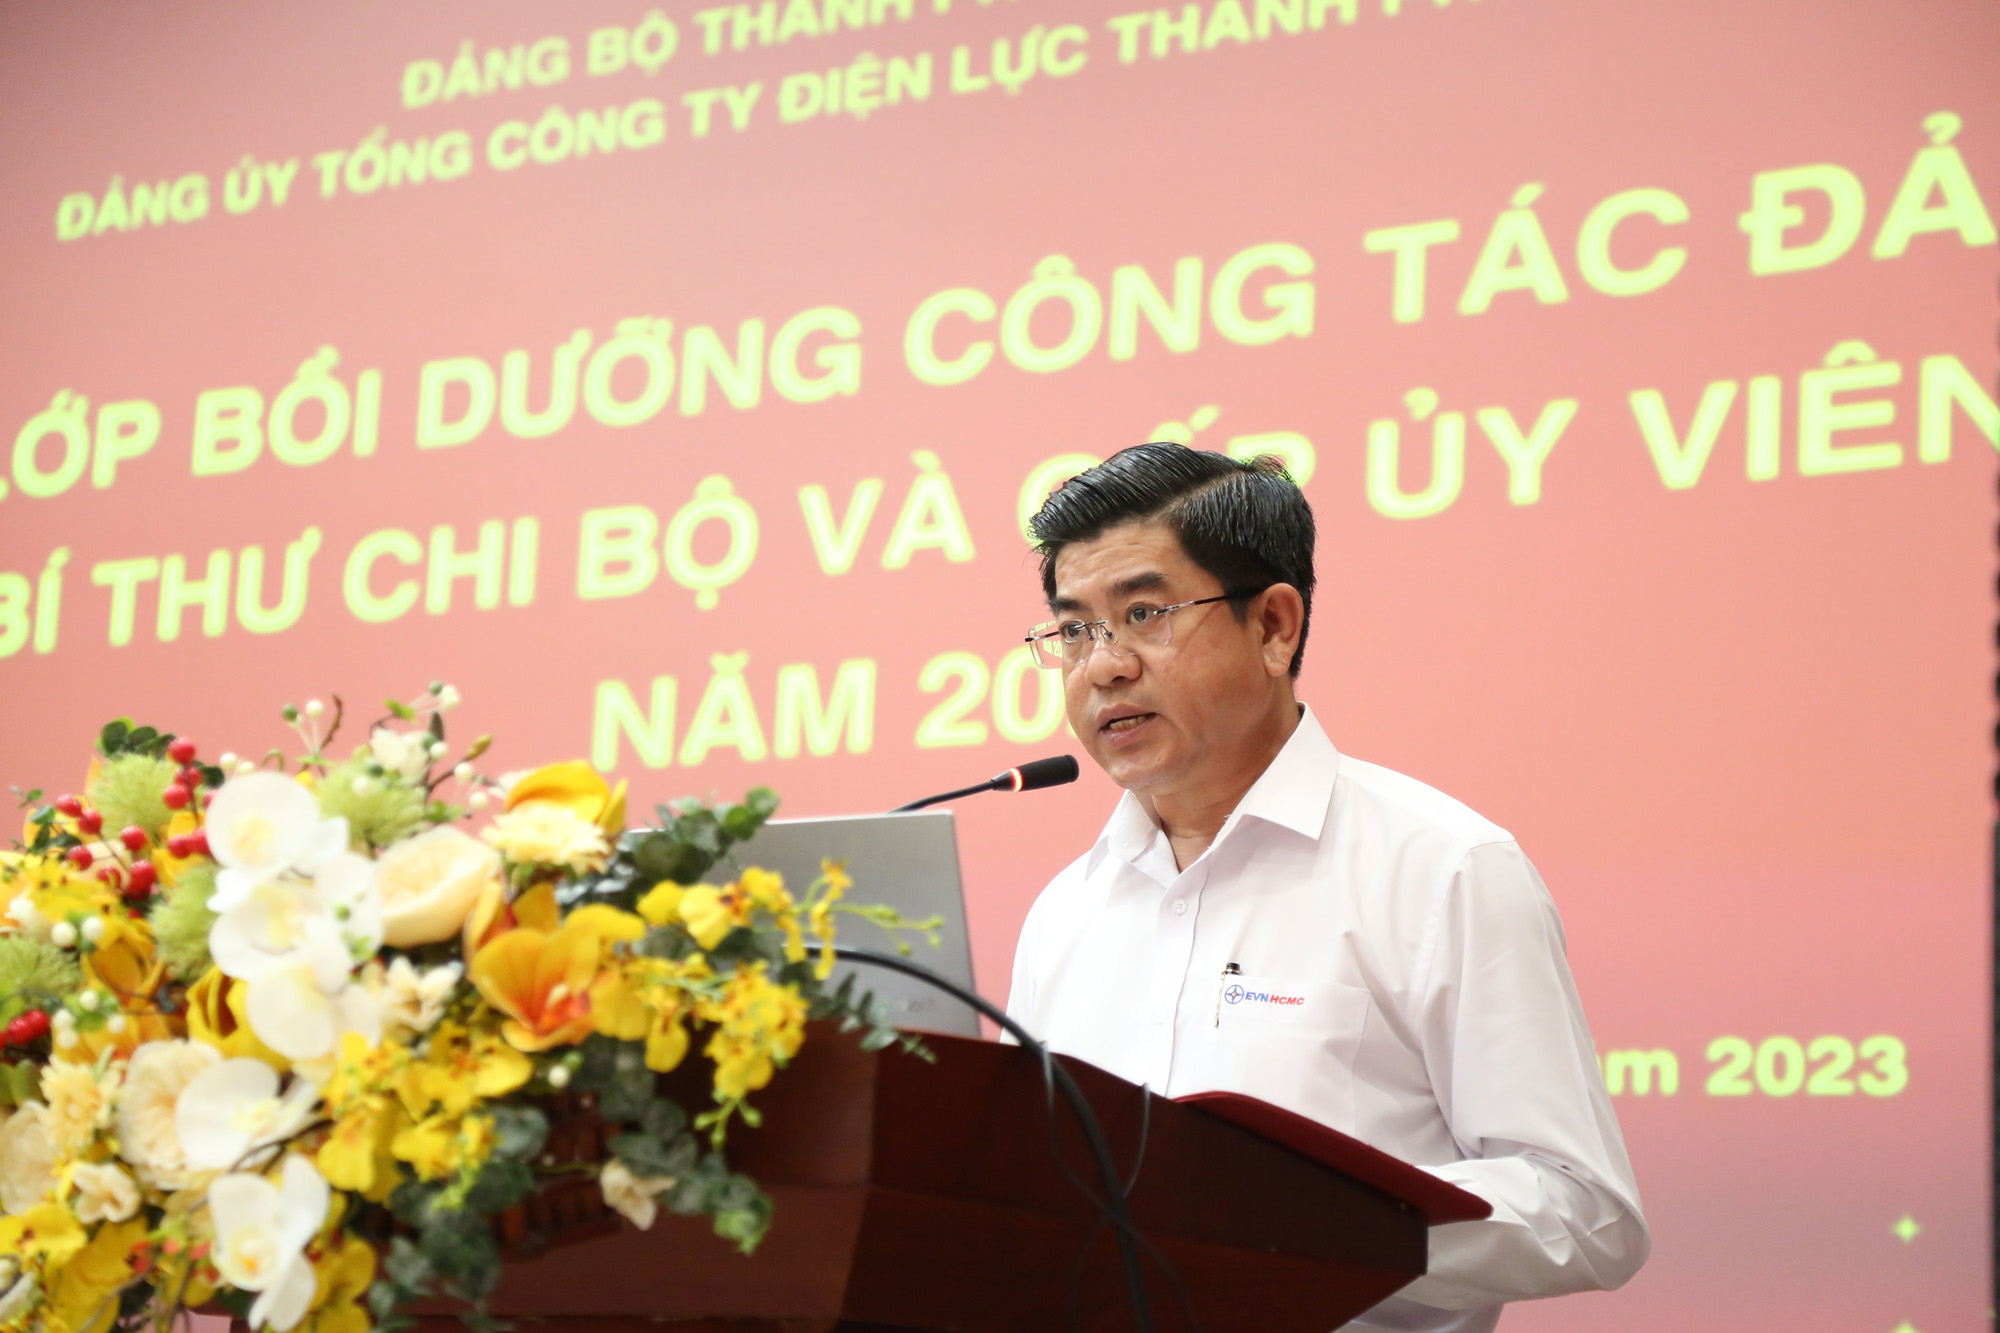 Đồng chí Bùi Hải Thành – Phó Bí thư thường trực Đảng ủy, Phó Tổng Giám đốc Tổng công ty phát biểu tại lớp bồi dưỡng.